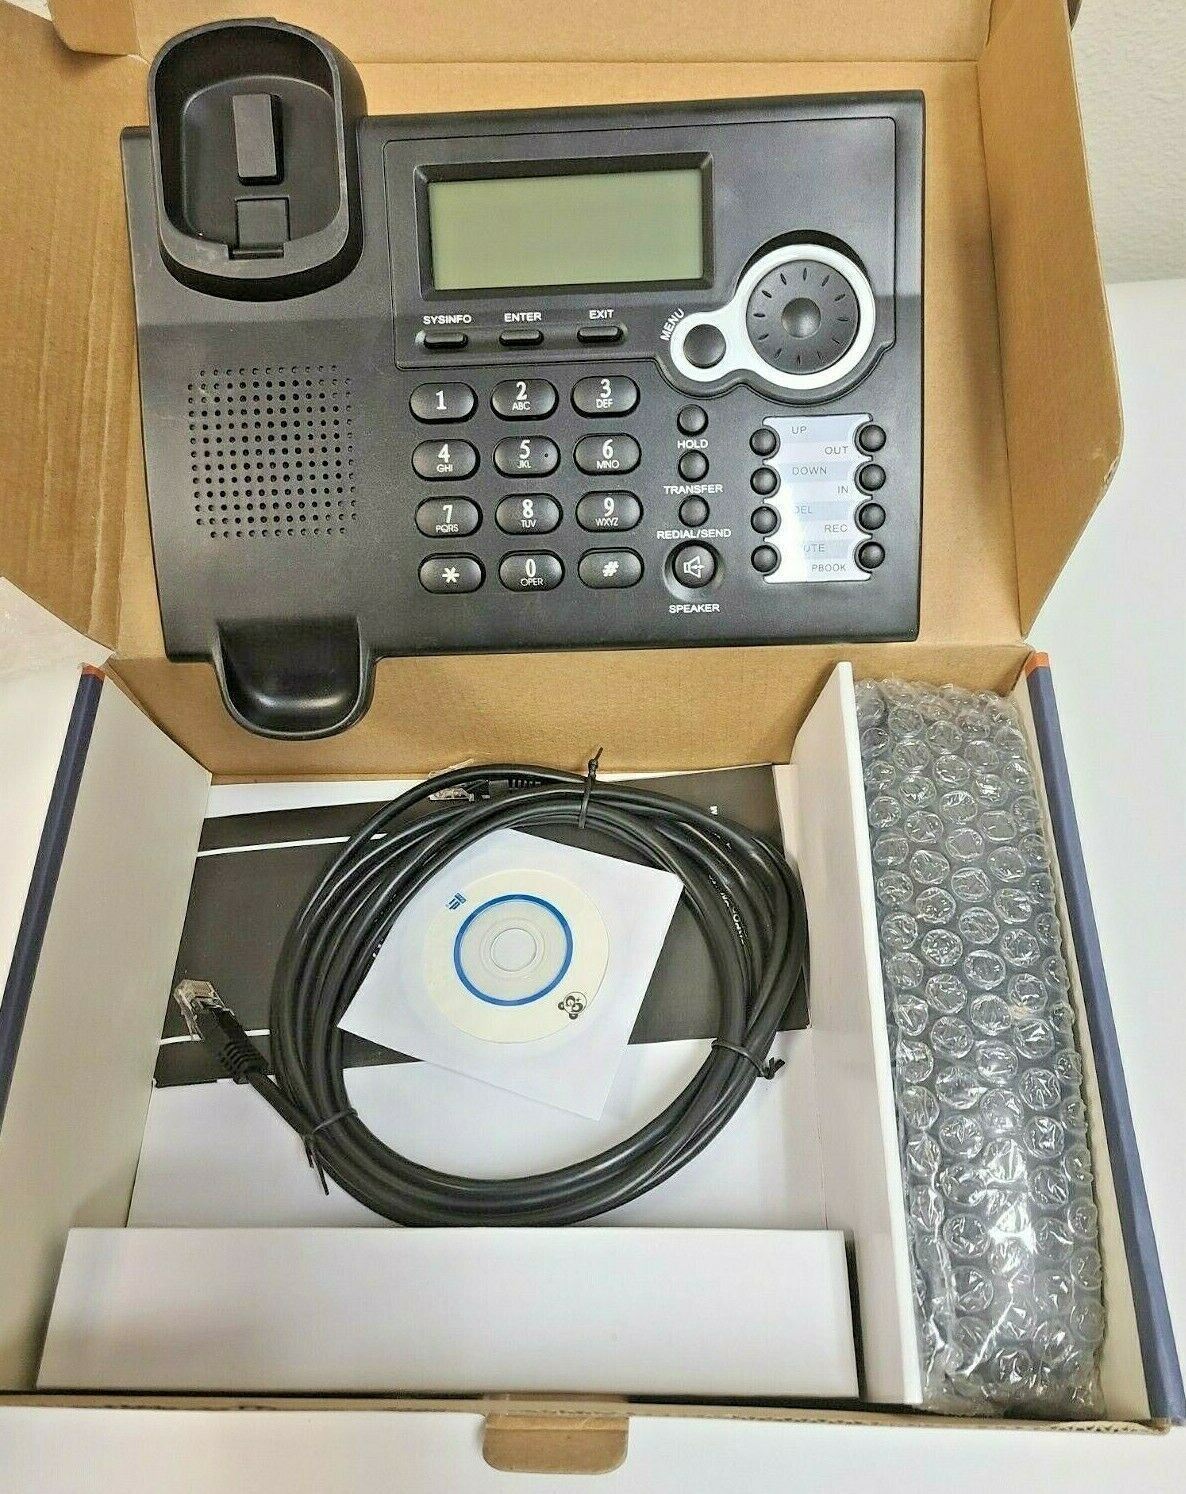  VoIP IP Phone SIP WAN FV6020 Fanvil Gigabit Office Support IAX IAX2